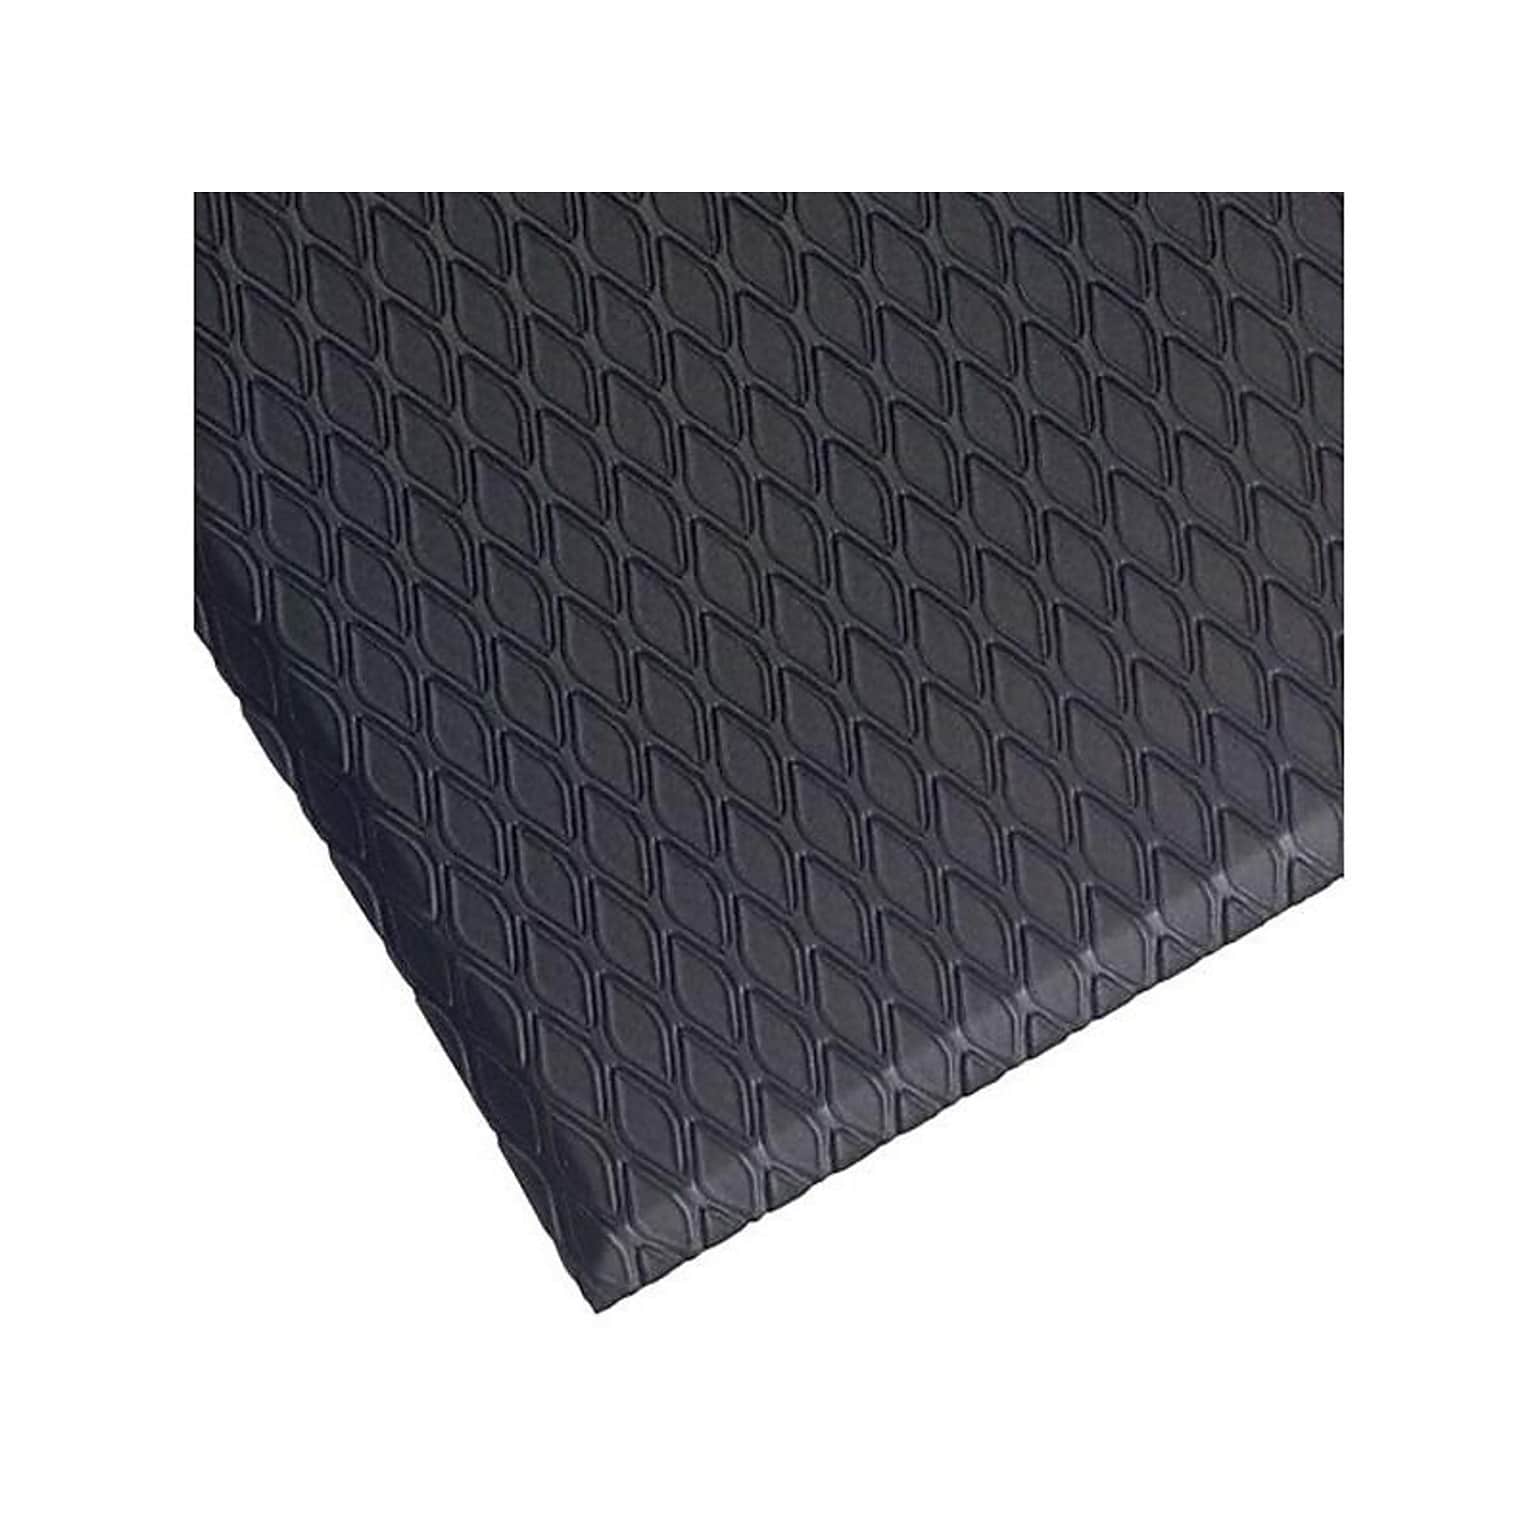 M+A Matting Cushion Max Anti-Fatigue Mat, 60 x 36, Charcoal (414035100)